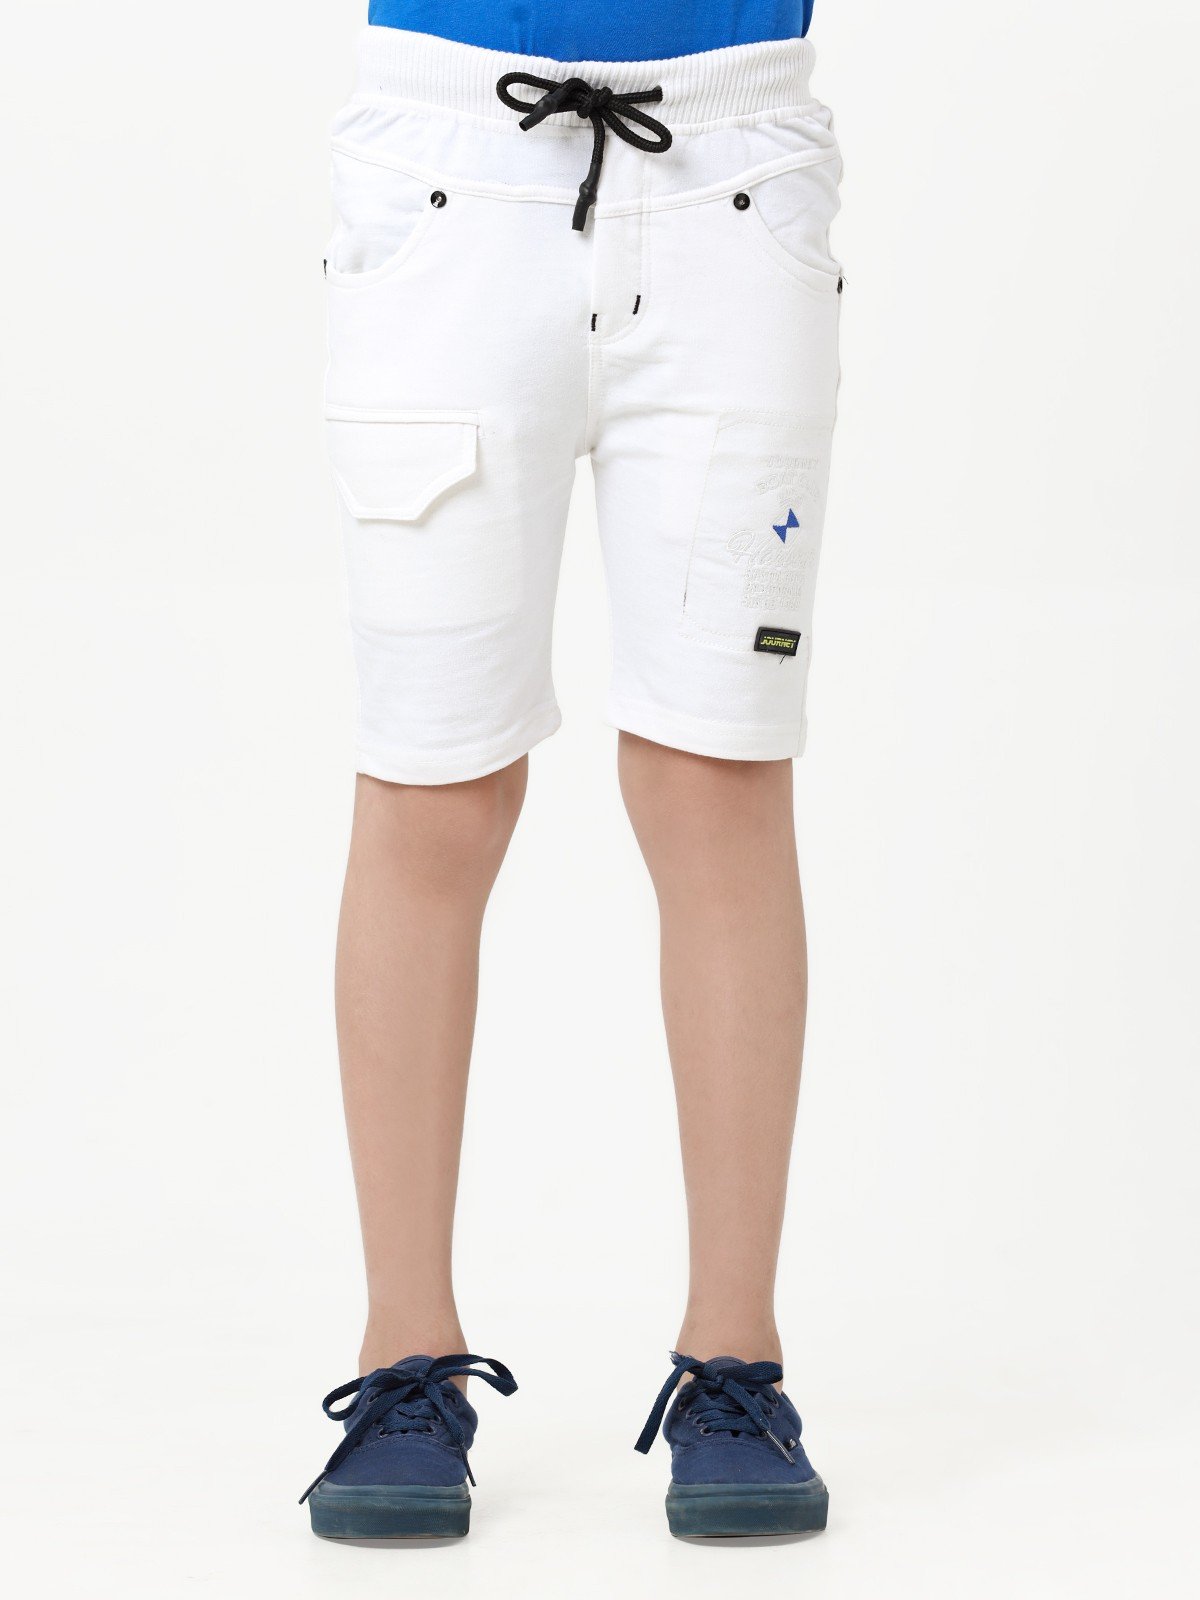 Boy's White Shorts - EBBSK23-026